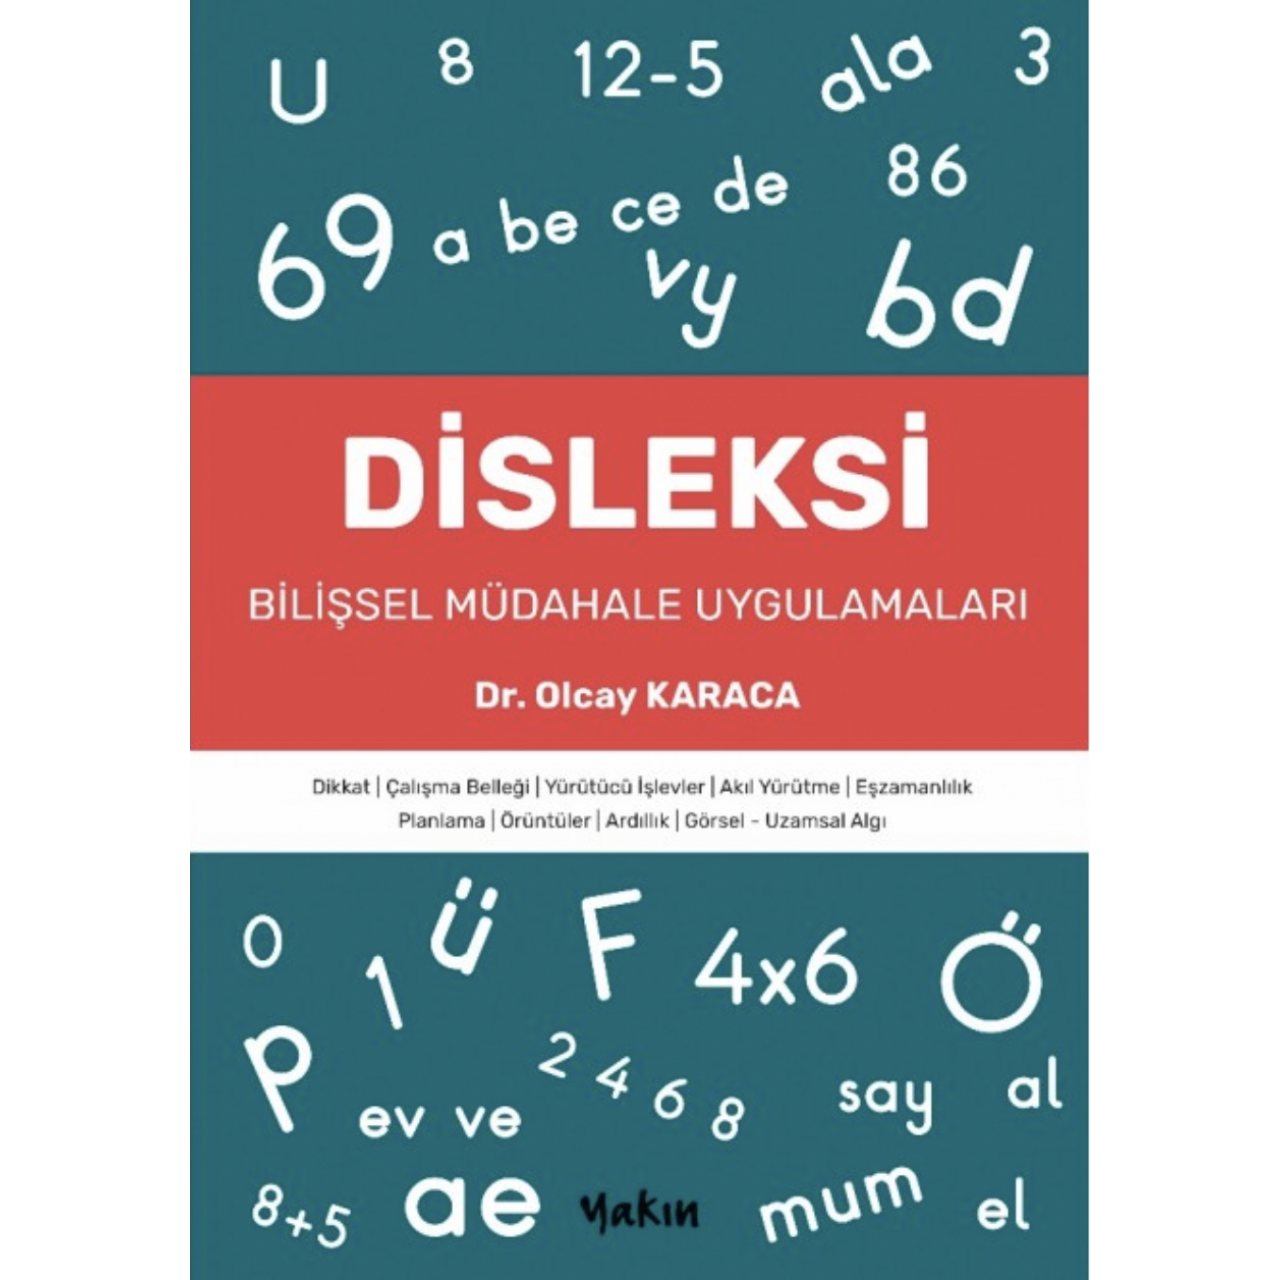 Disleksi - Bilişsel Müdahale Uygulamaları - Dr Olcay Karaca